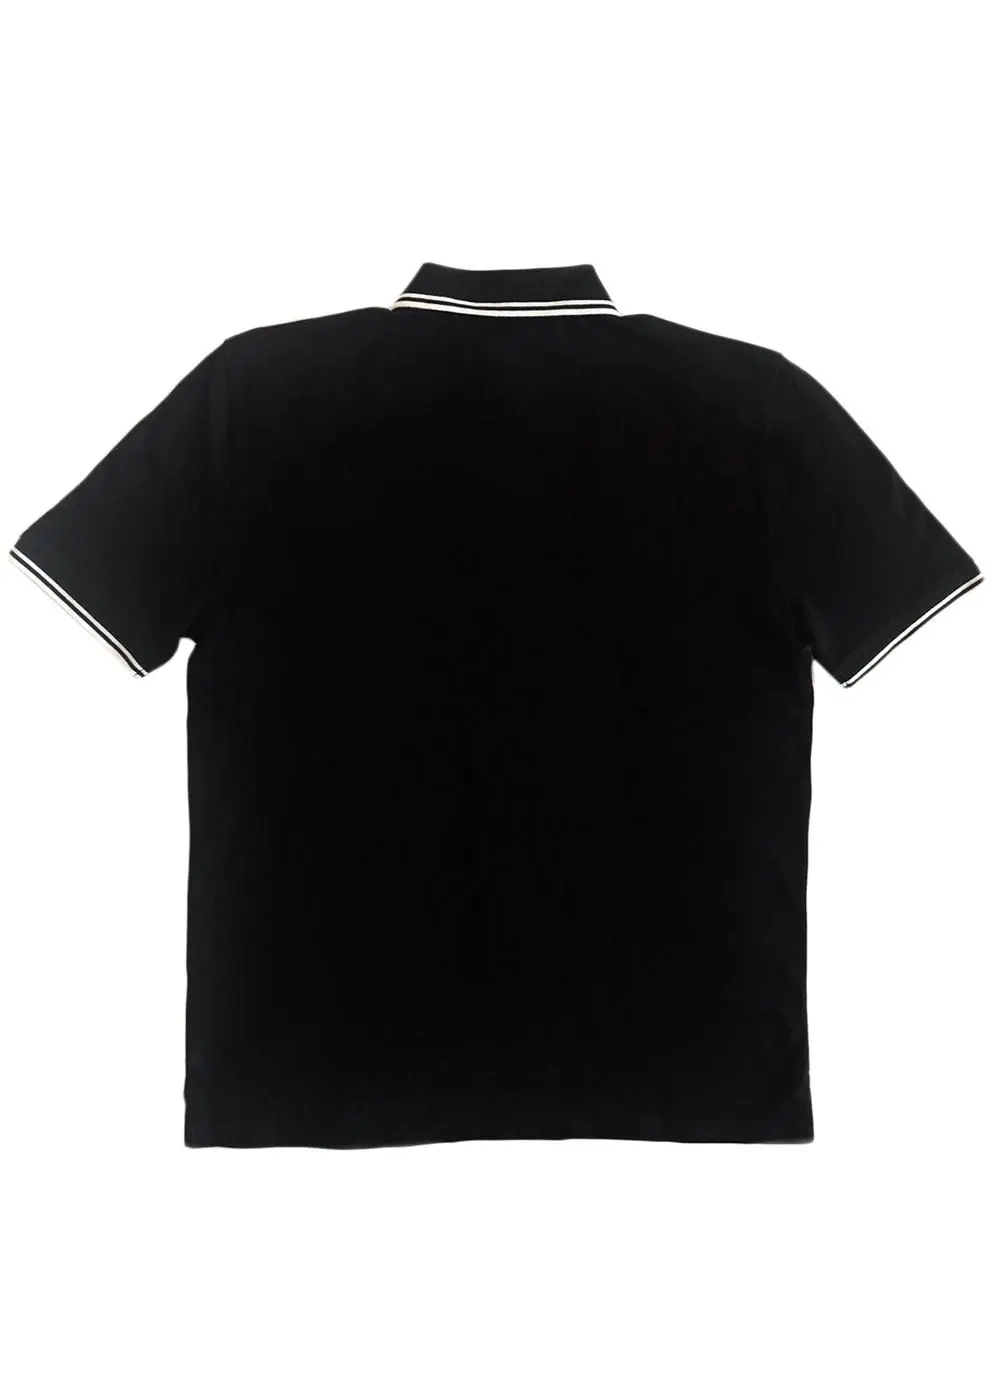 Black Guinness Notre Dame Short-Sleeve Polo Shirt | Blarney